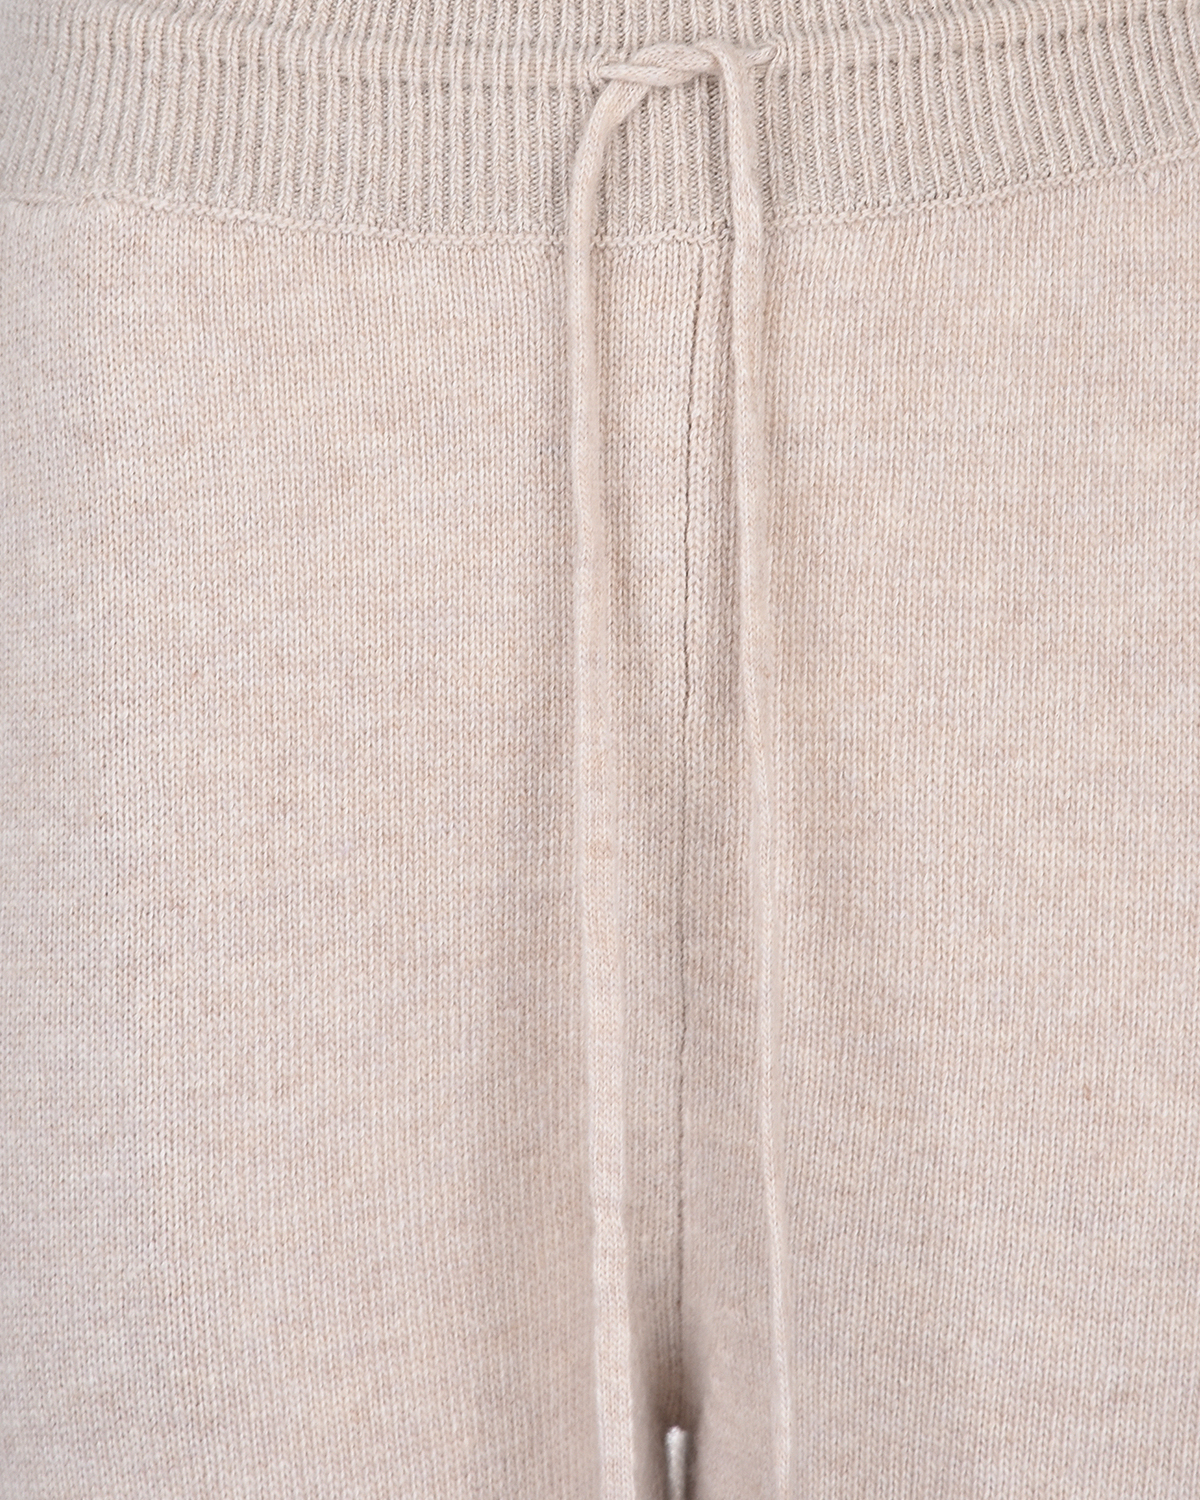 Бежевые брюки-джоггеры из шерсти и кашемира Tak Ori, размер 44, цвет бежевый - фото 3